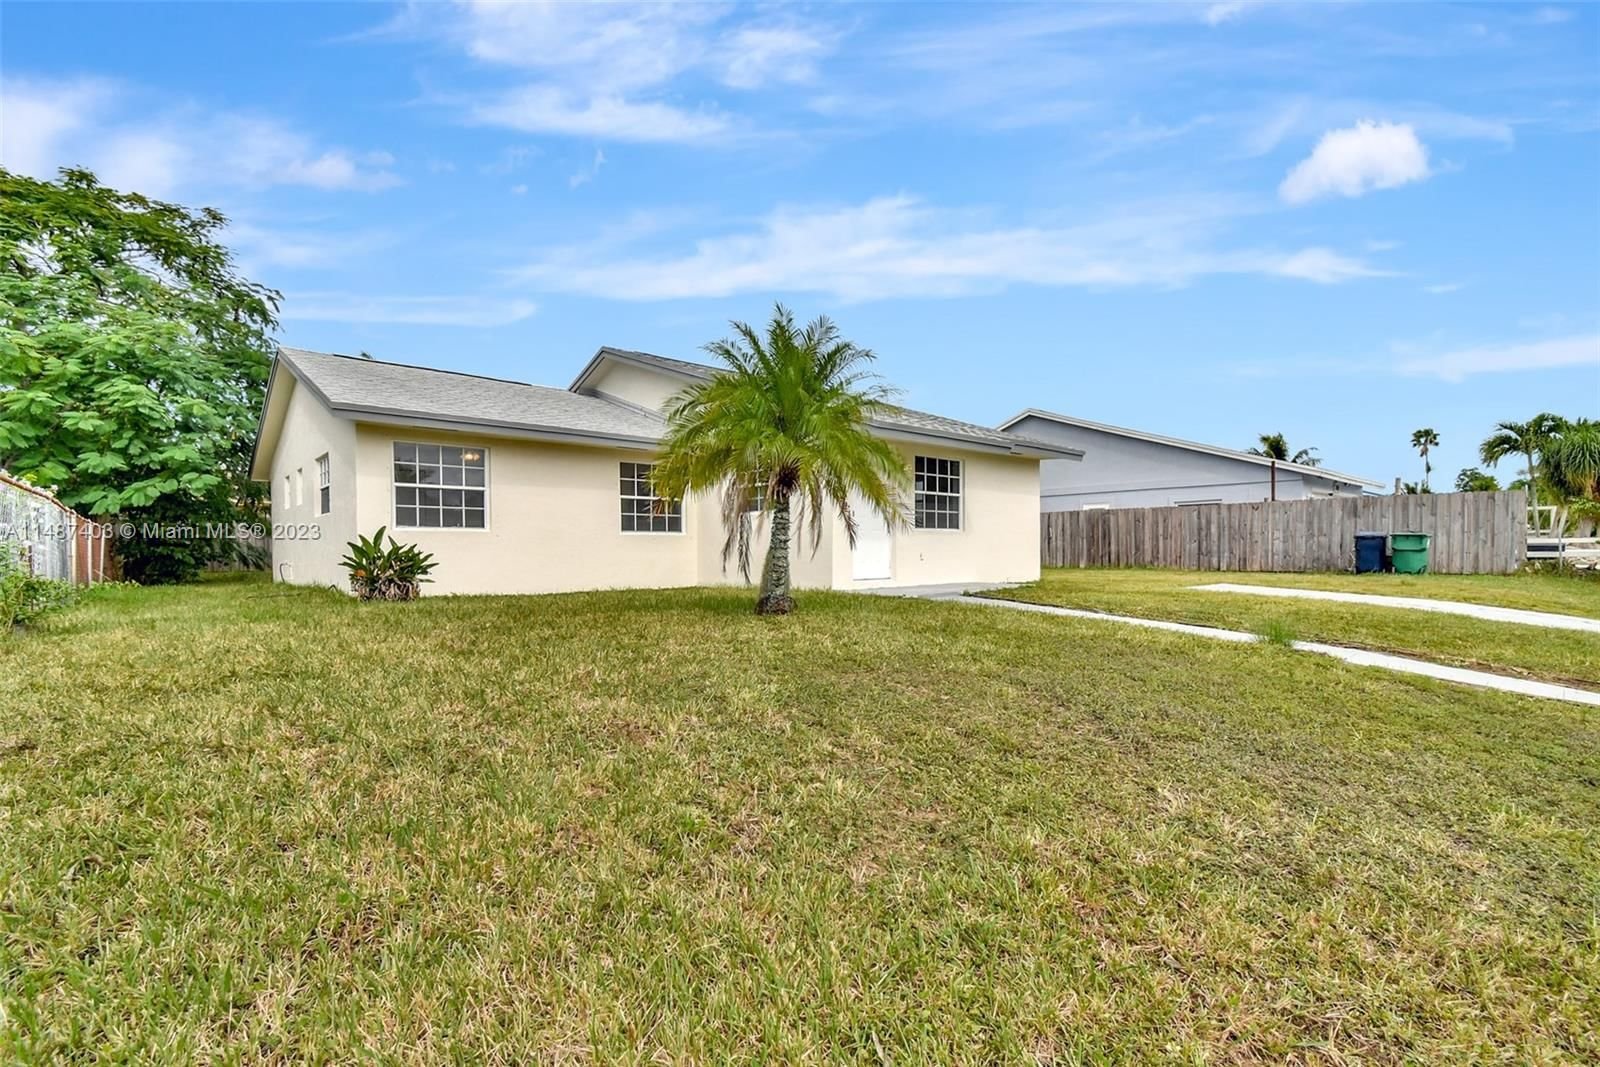 Real estate property located at 15955 304th Ter, Miami-Dade County, PINAR DEL RIO SUB, Homestead, FL